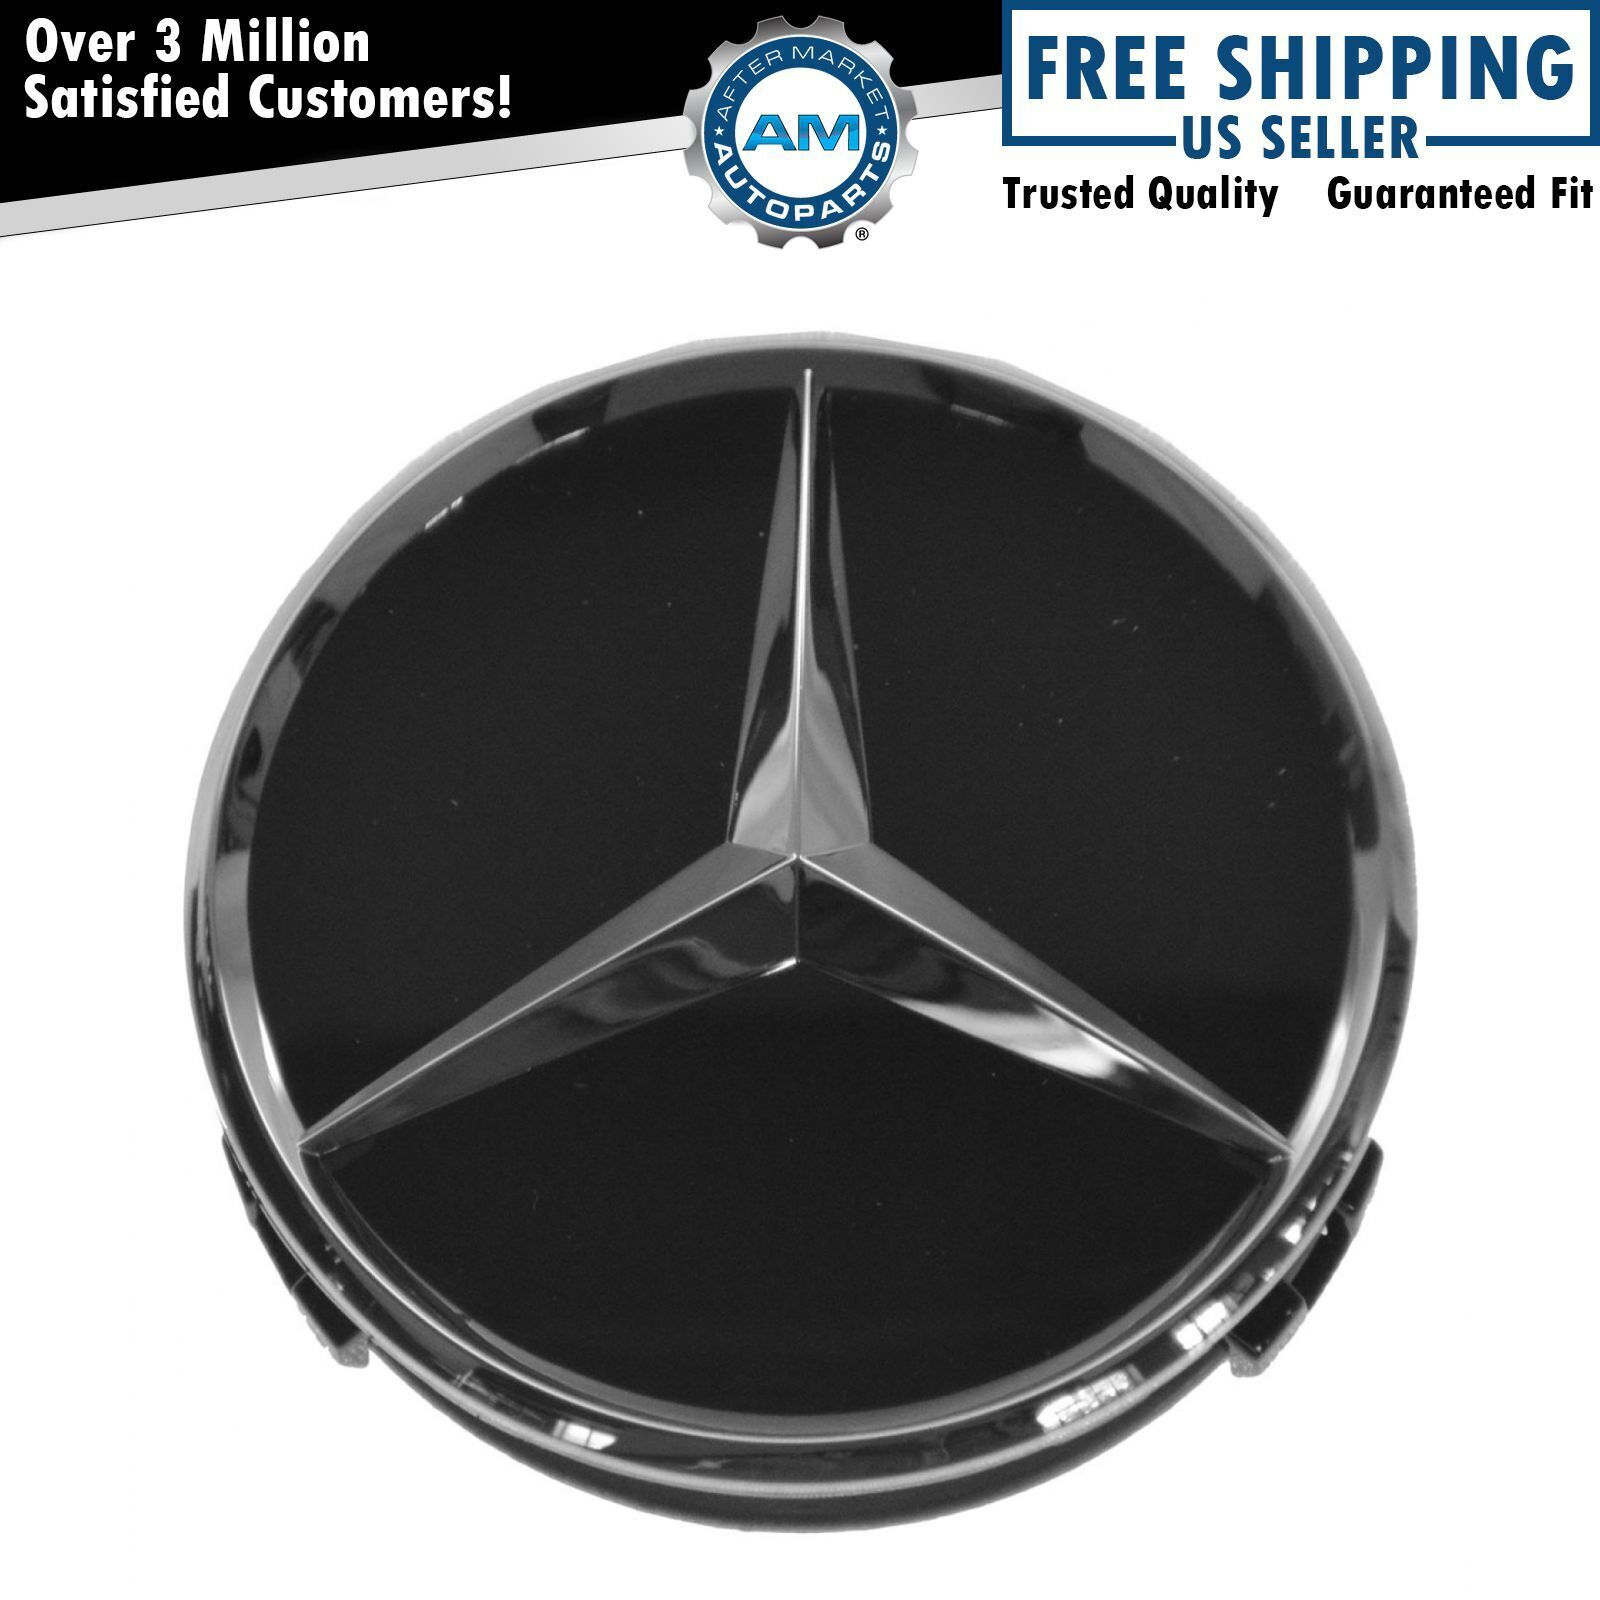 OEM Raised Chrome & Black Wheel Center Cap for Mercedes Benz New